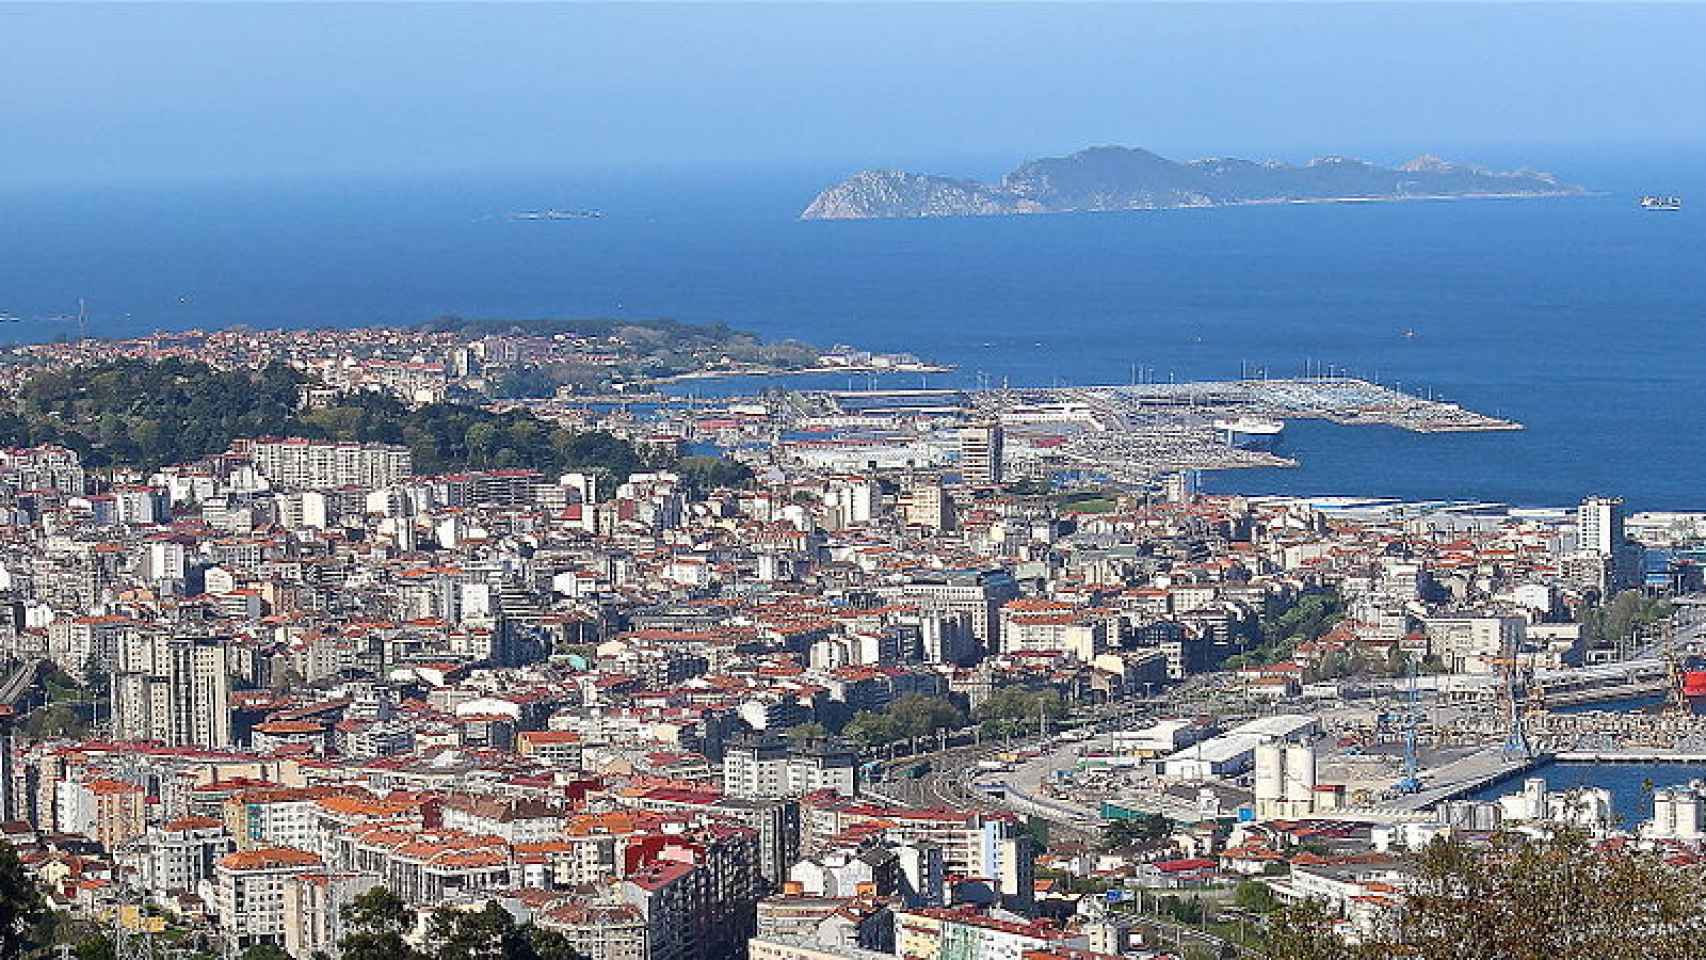 La ciudad de Vigo, vista desde el aire.